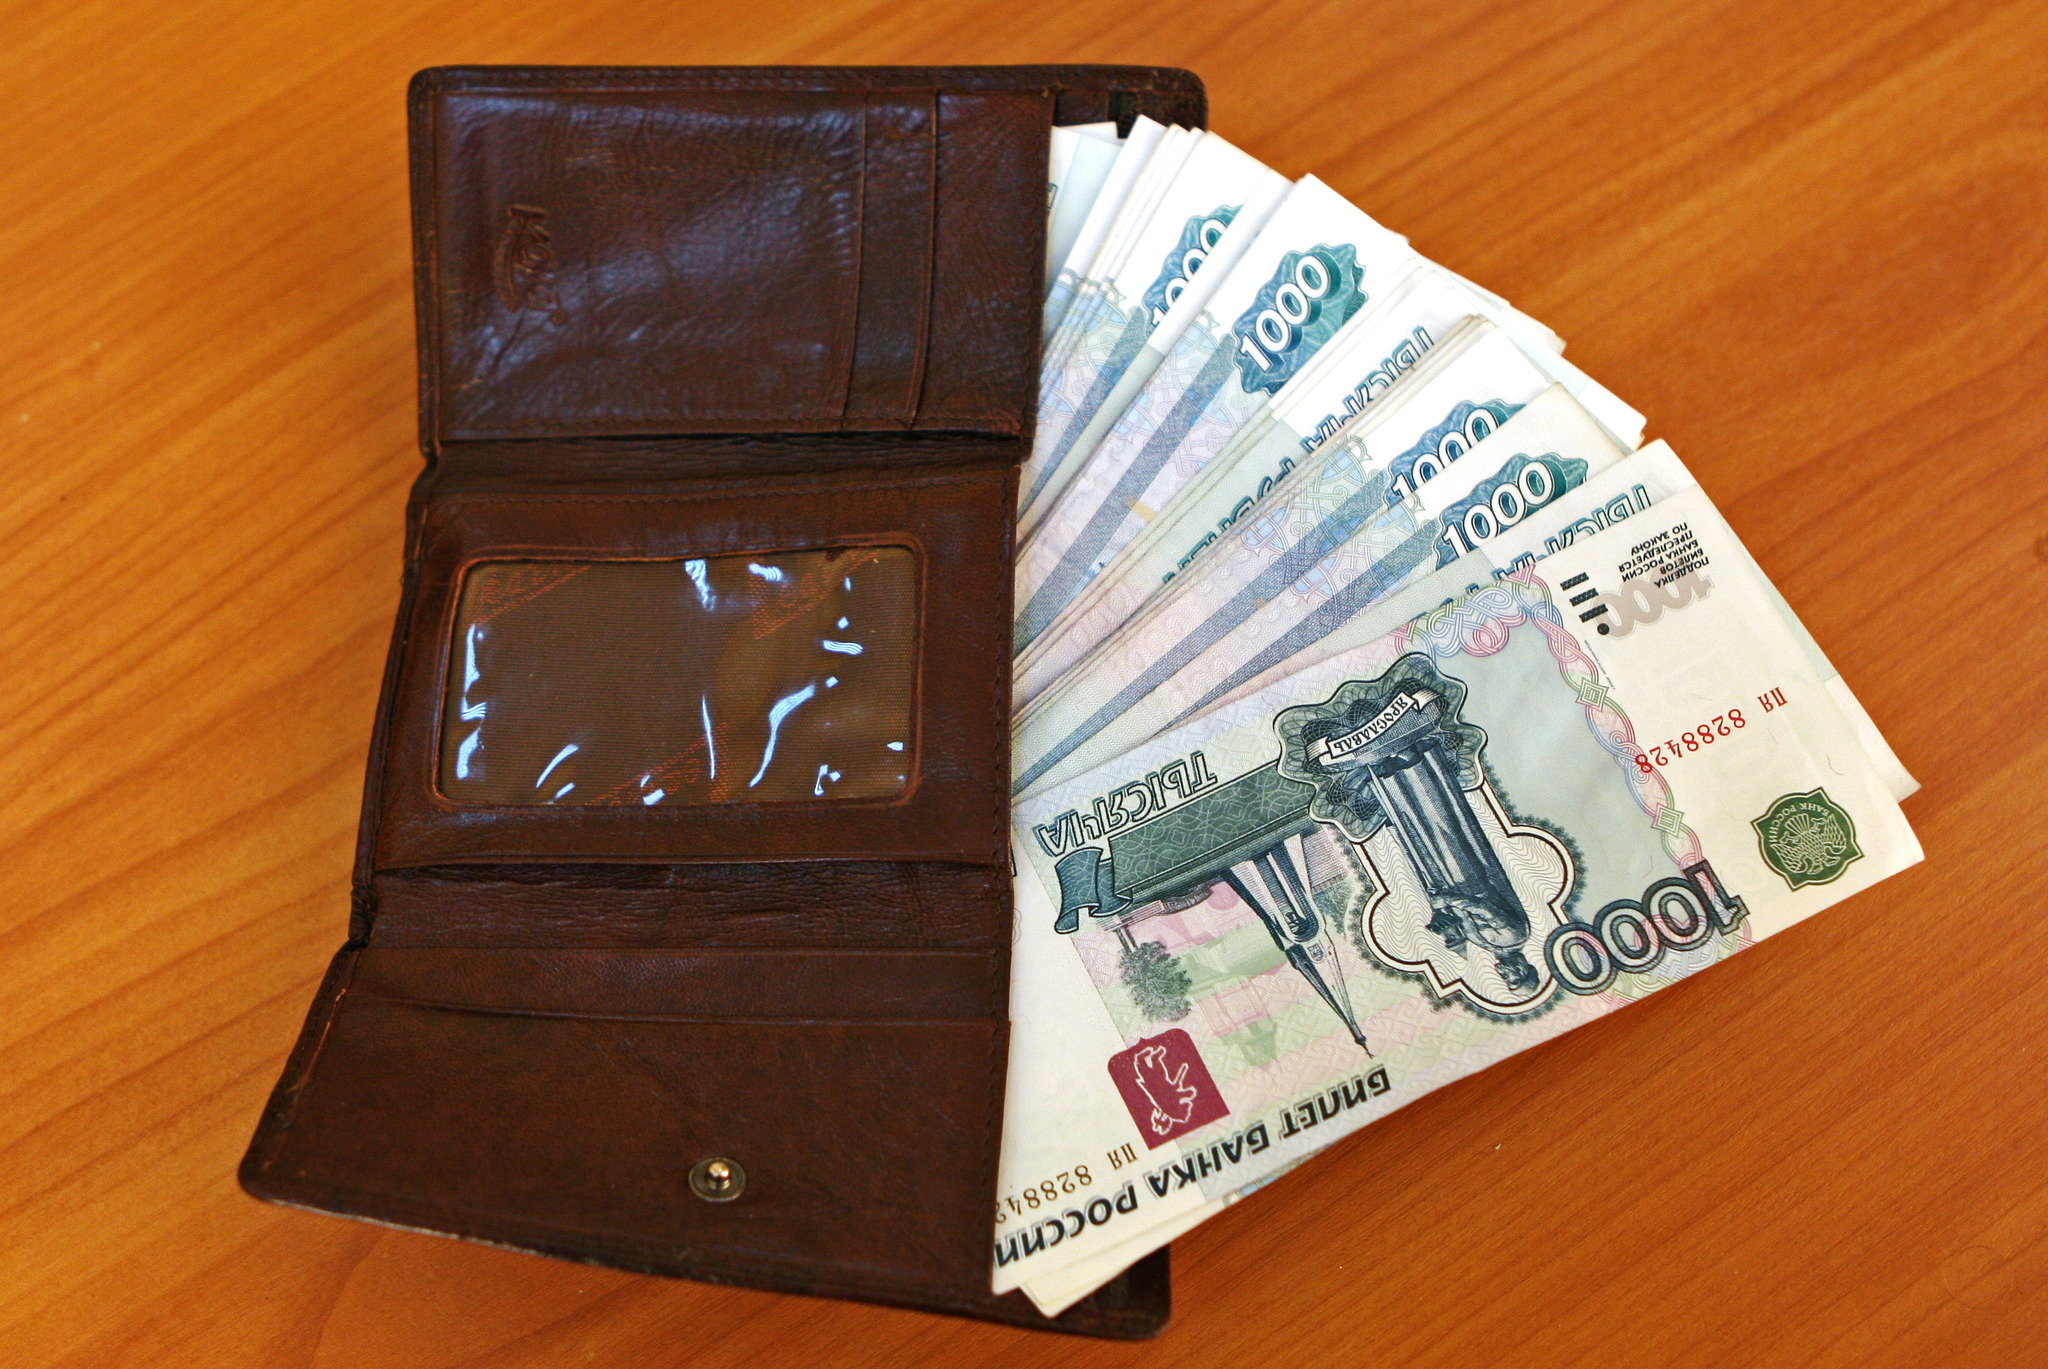 Потратившую деньги из найденного кошелька москвичку осудили за кражу |  Пикабу